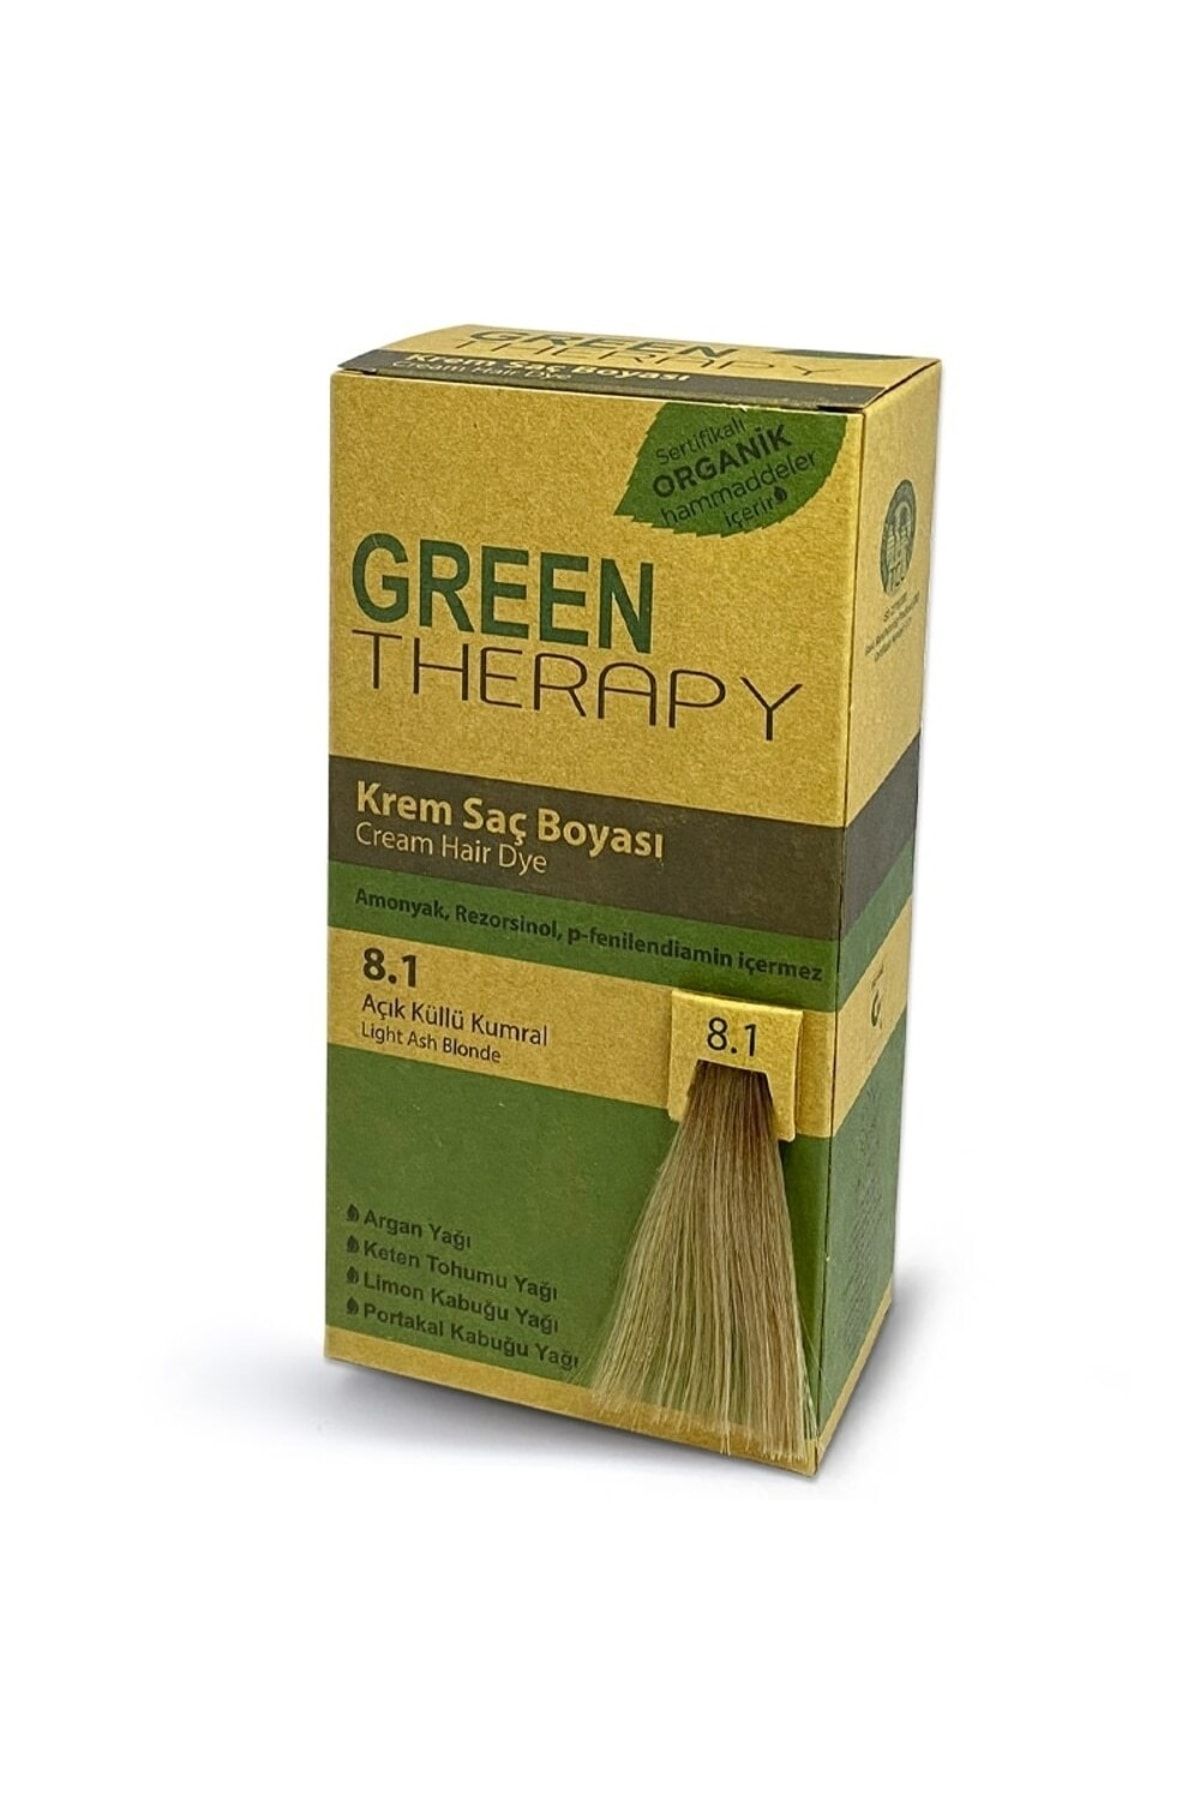 Green Therapy Krem Saç Boyası 6,15 Buzlu Çikolata Kahve